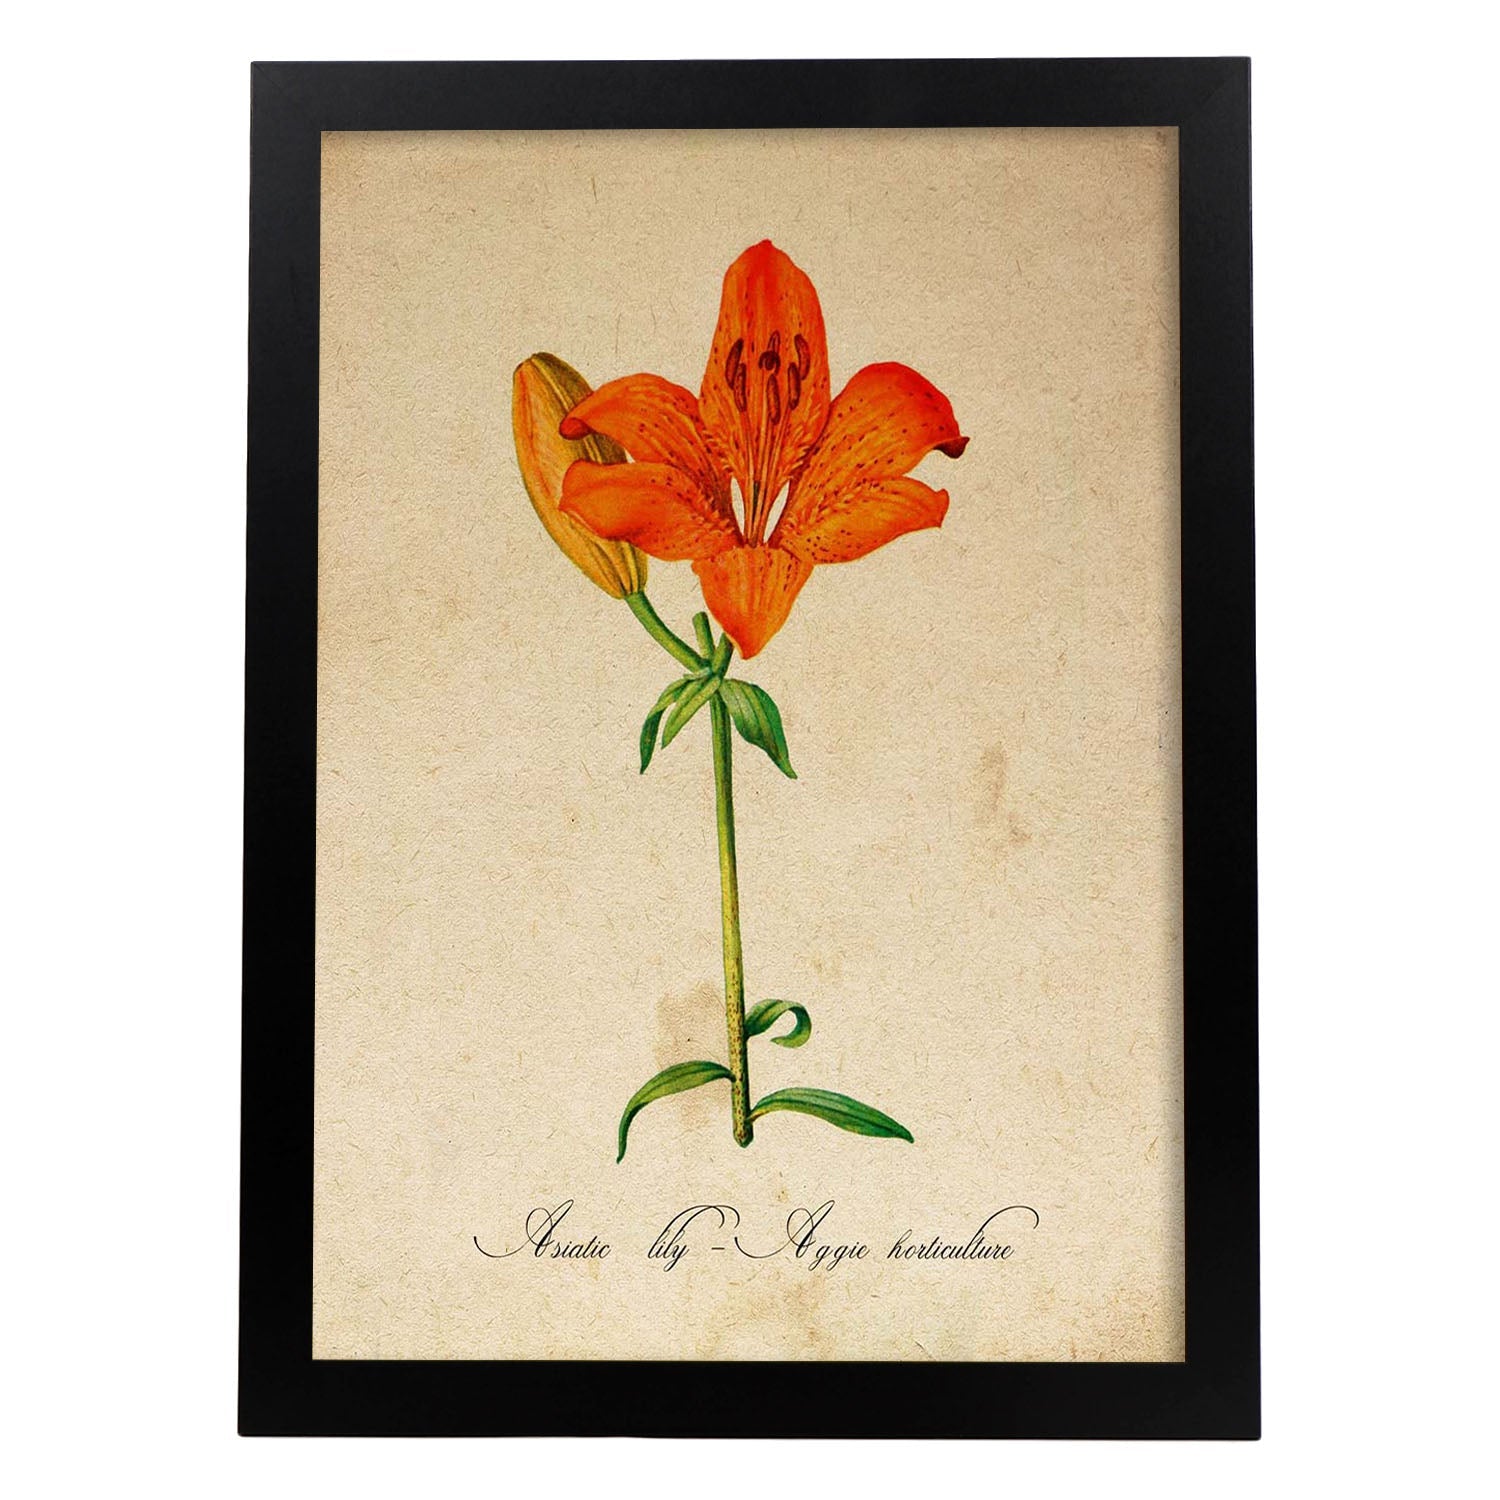 Poster de flores vintage. Lámina Asiatic Lily - Aggie Horticulture con diseño vintage.-Artwork-Nacnic-A3-Marco Negro-Nacnic Estudio SL